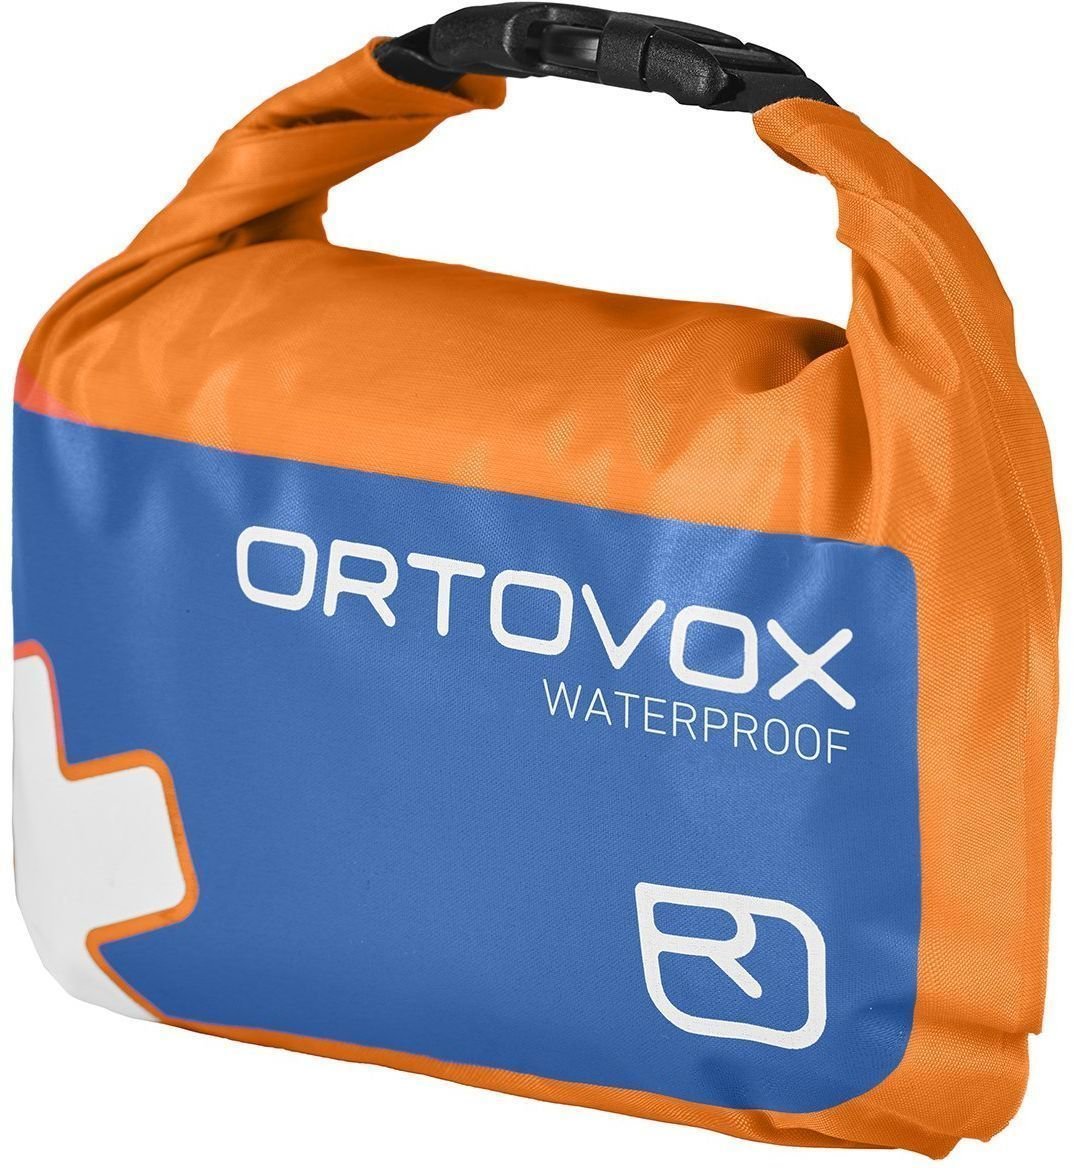 Veneen ensiapu Ortovox First Aid Waterproof Veneen ensiapu